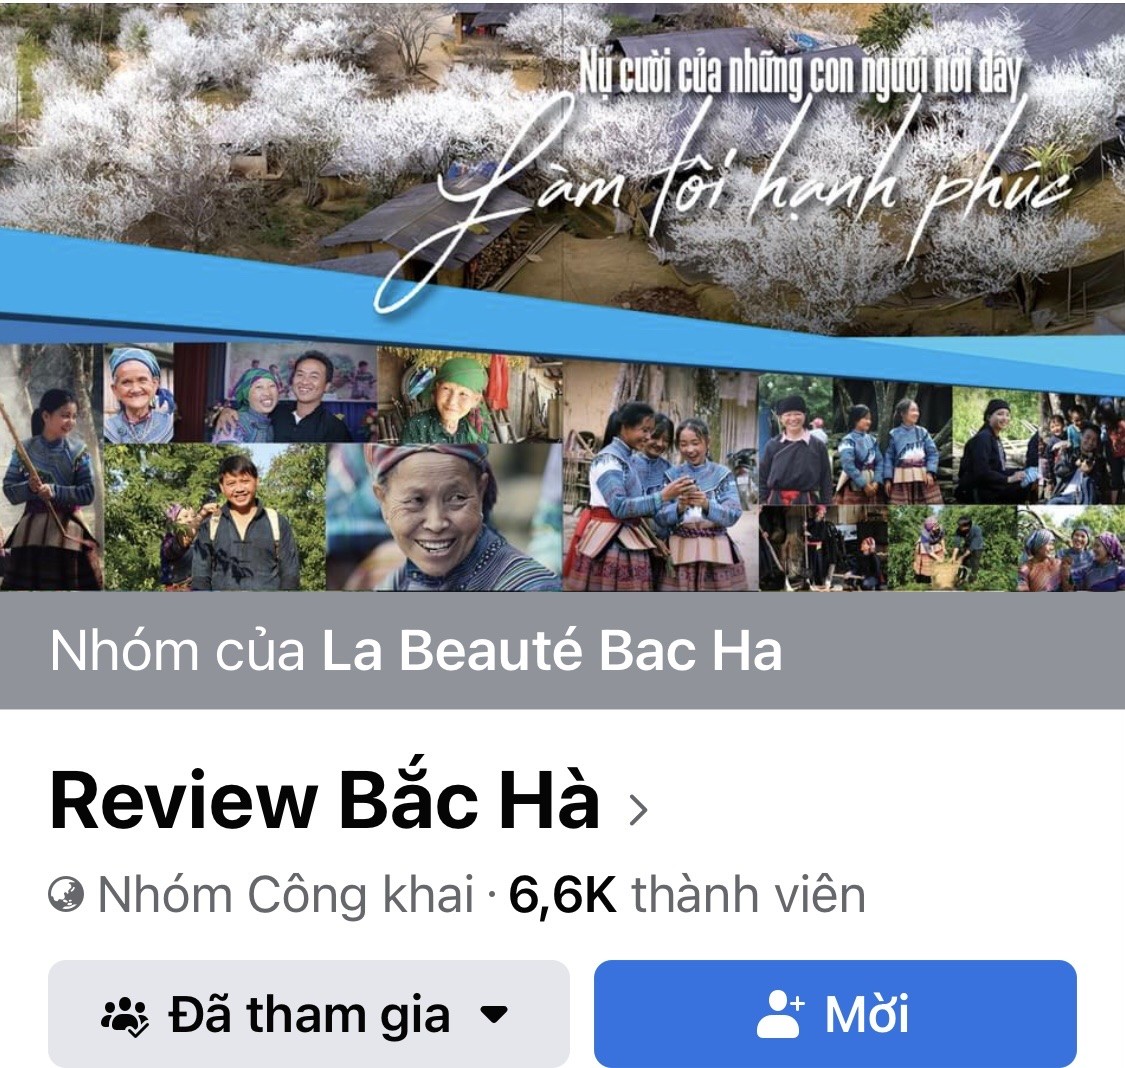 Lào Cai: Mạng xã hội - “cánh cửa” quảng bá du lịch thời 4.0 - Ảnh 1.